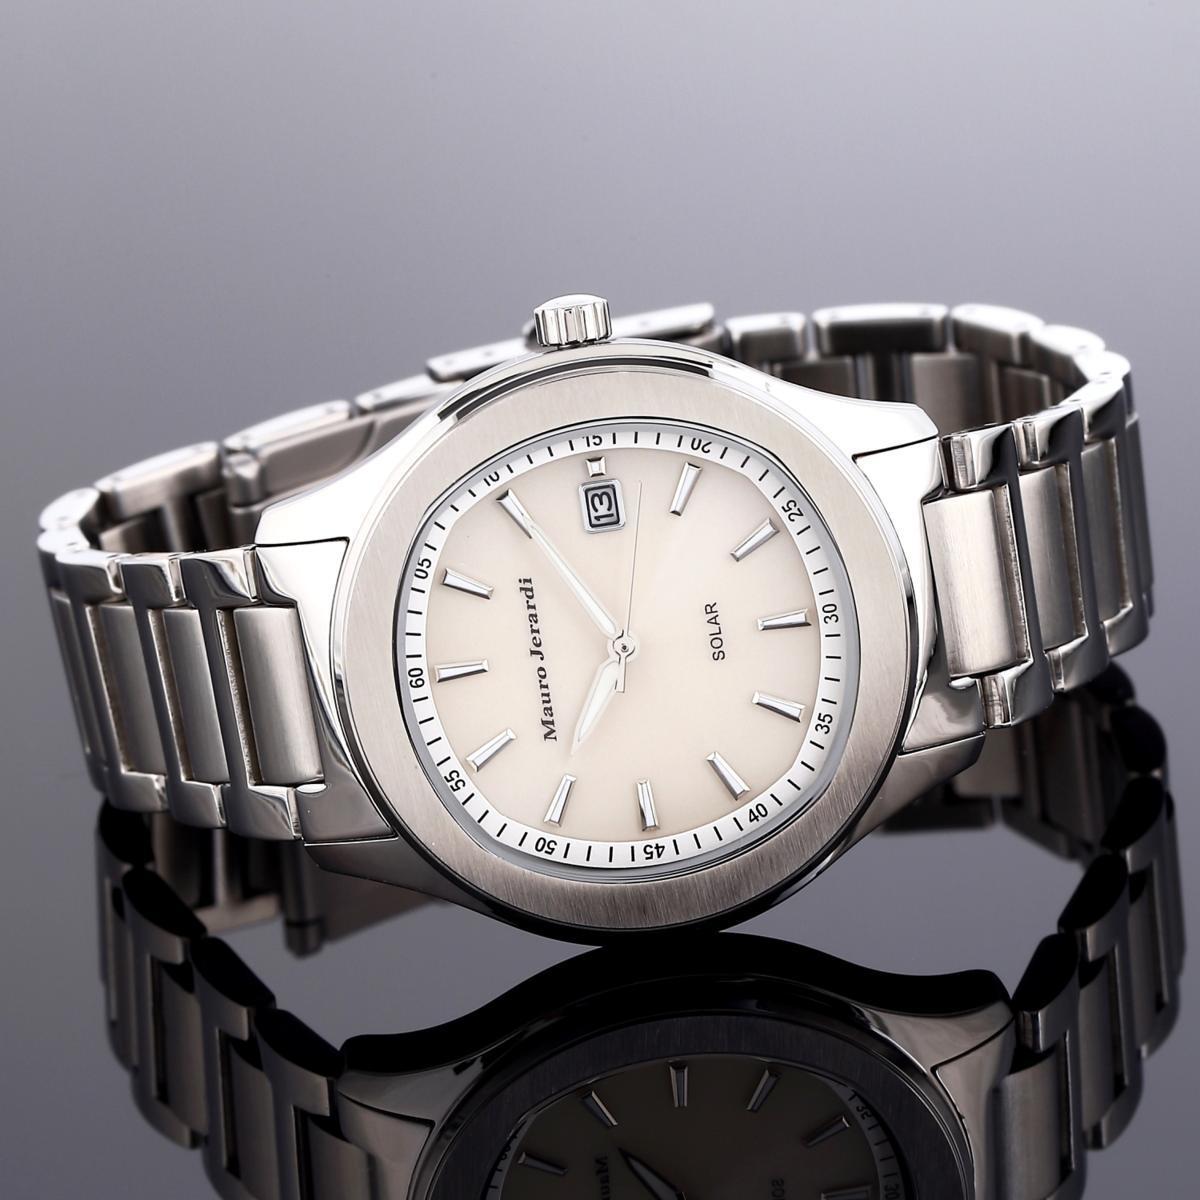 【メーカー正規品】マウロジェラルディ腕時計 ソーラー メンズ腕時計 アナログ3針カレンダー ソーラーメンズウォッチ MJ053-3